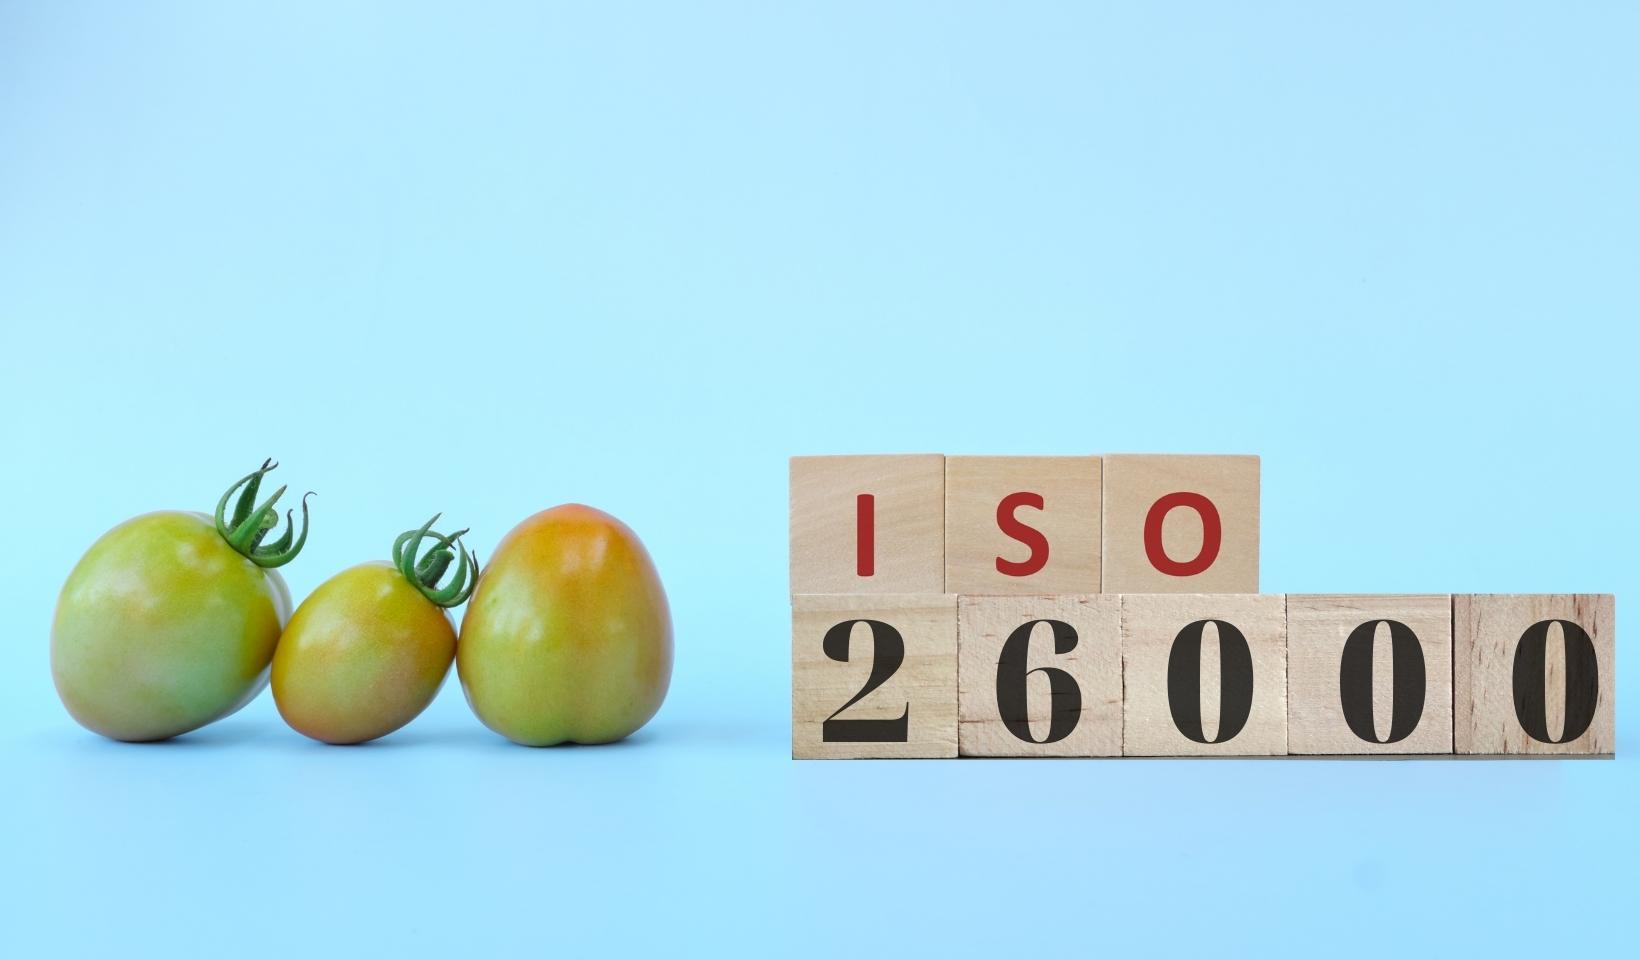 ISO 26000 là một Tiêu chuẩn quốc tế của Tổ chức Tiêu chuẩn quốc tế được ban hành